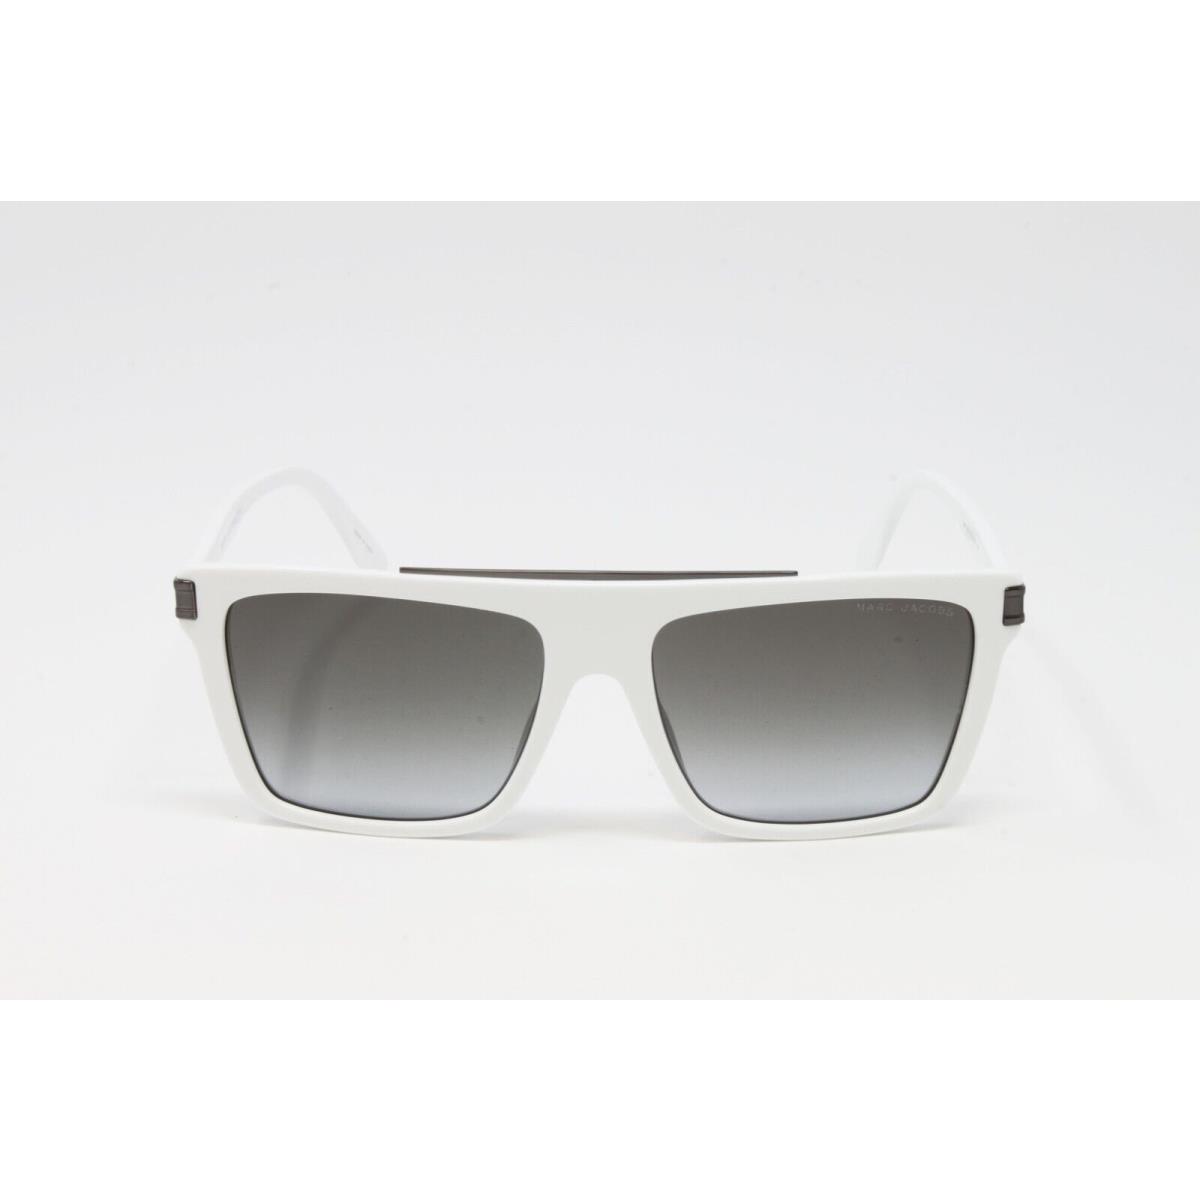 Marc Jacobs sunglasses  - White Frame, Gray Lens 2